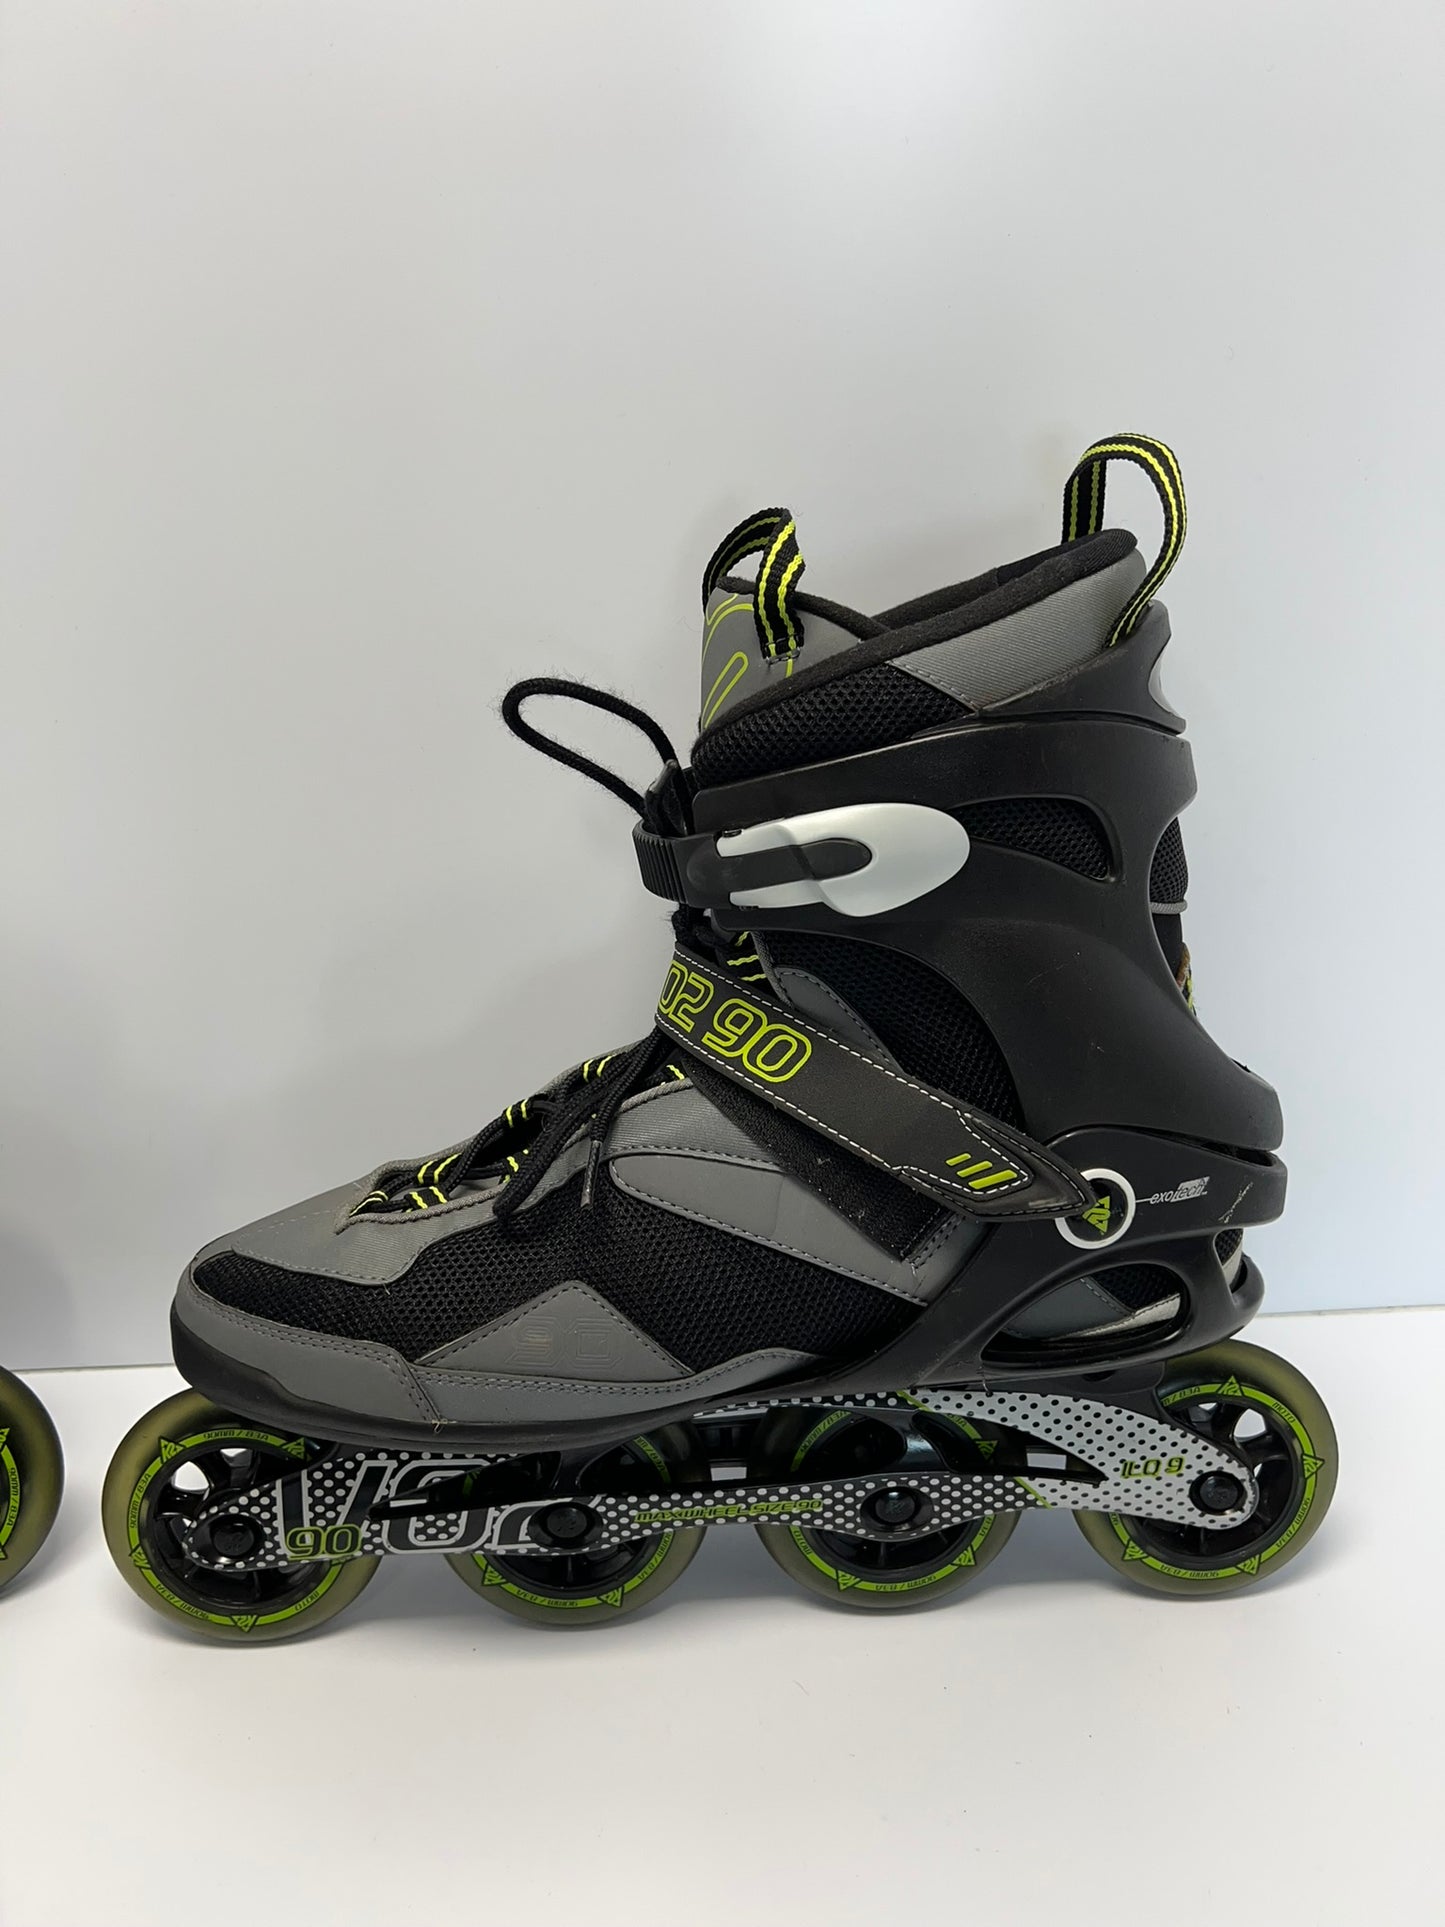 Inline Roller Skates Men's Size 13 K-2 V02 90 Black Grey Lime Rubber Wheels Excellent As New